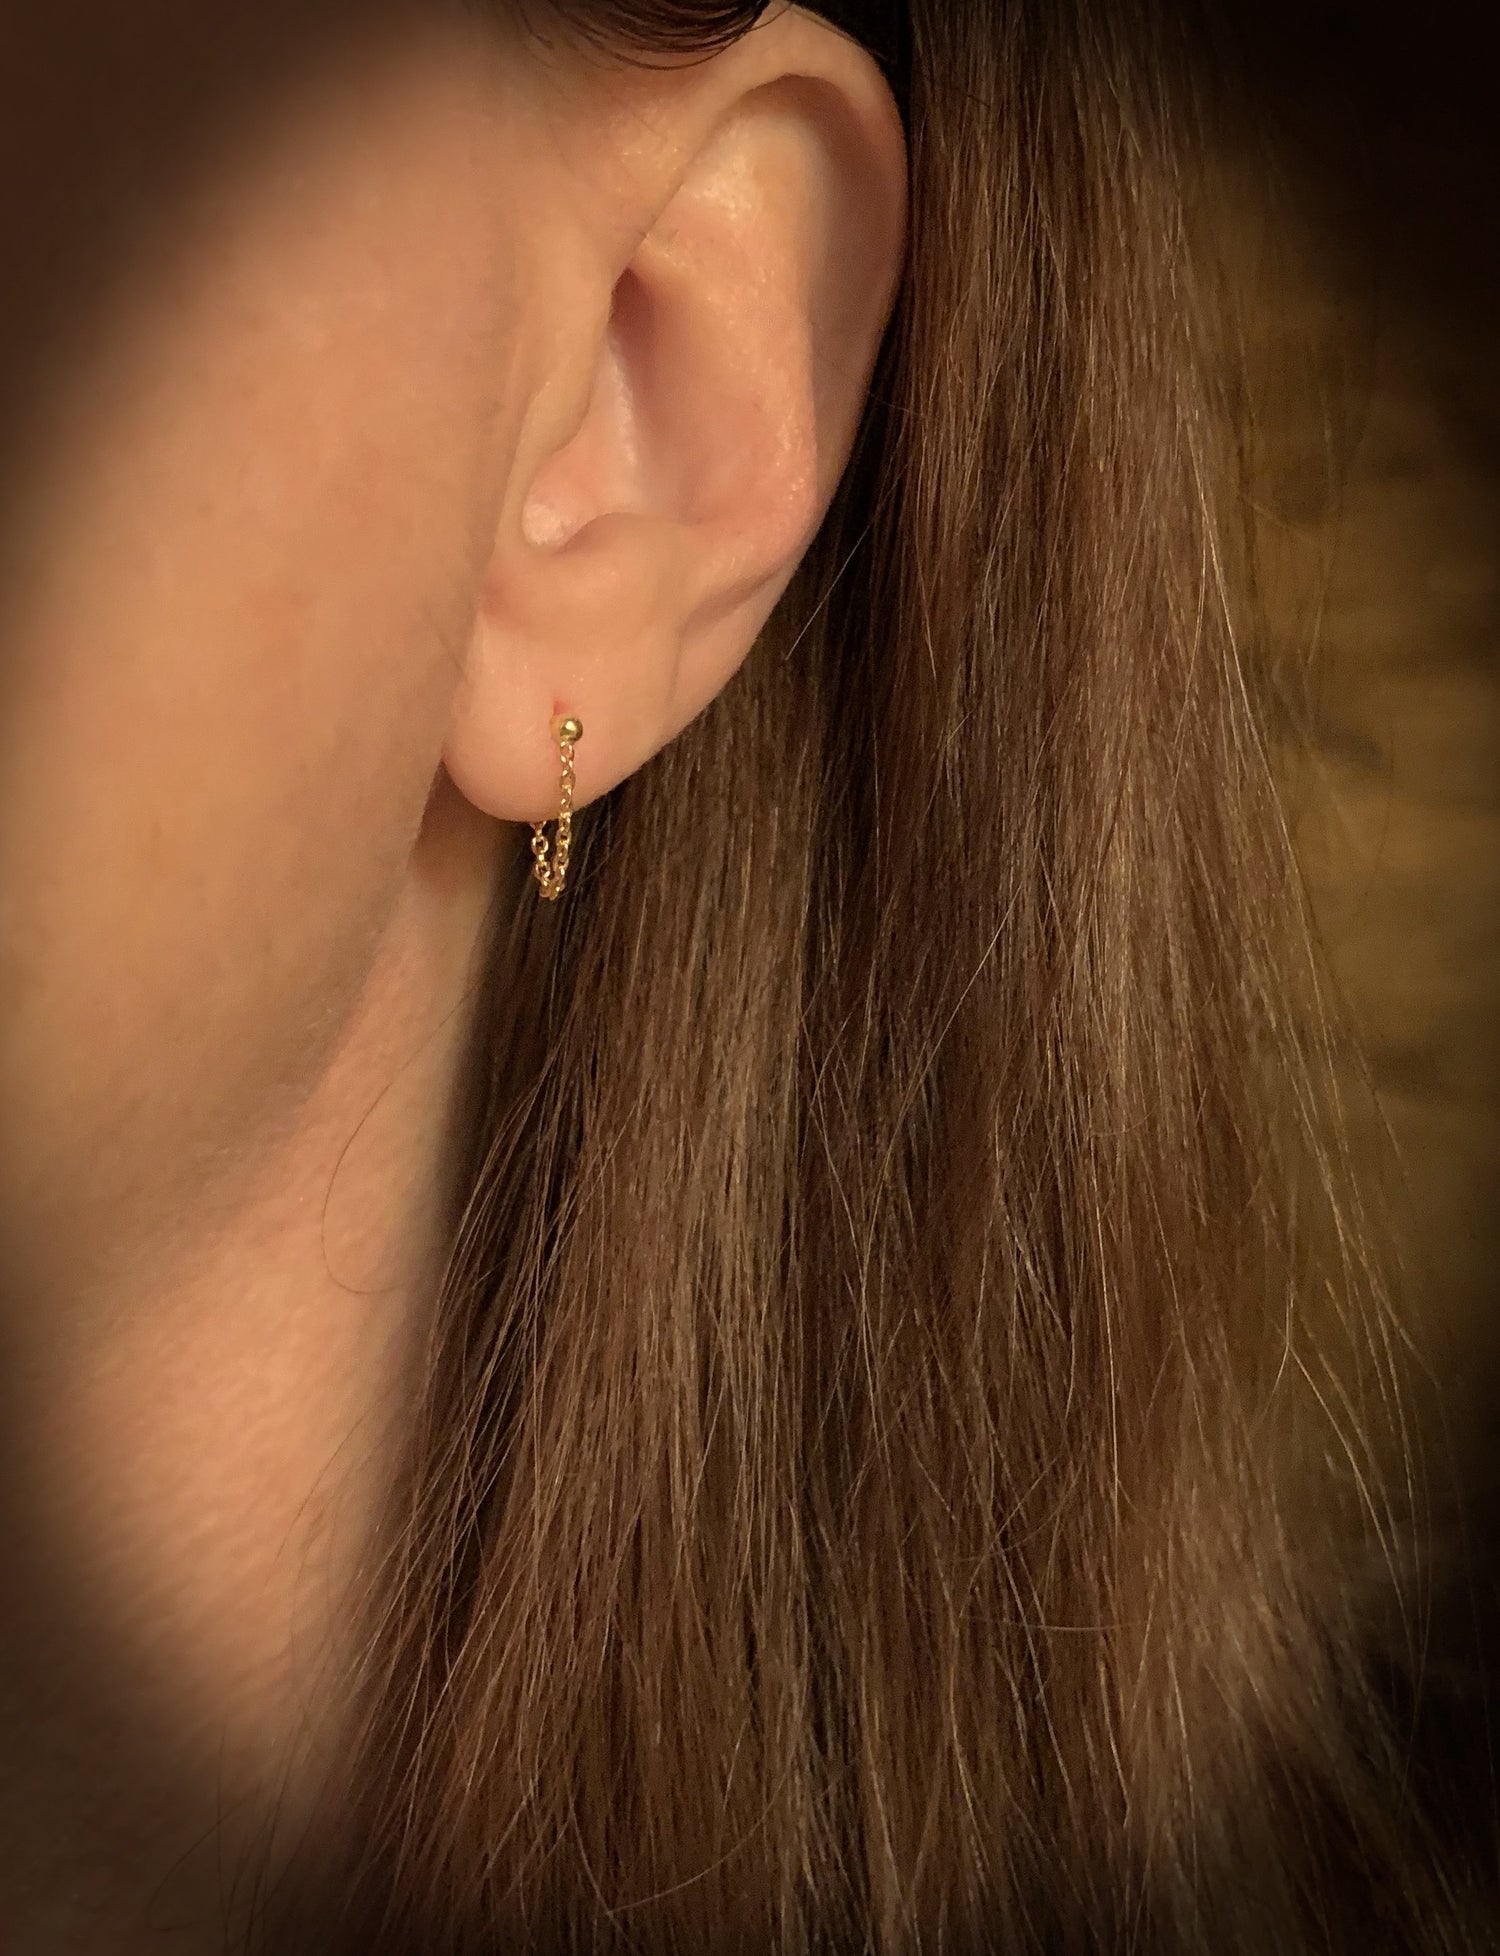 14K Gold Ball with Drape Chain Stud Earrings | Avie Fine Jewelry